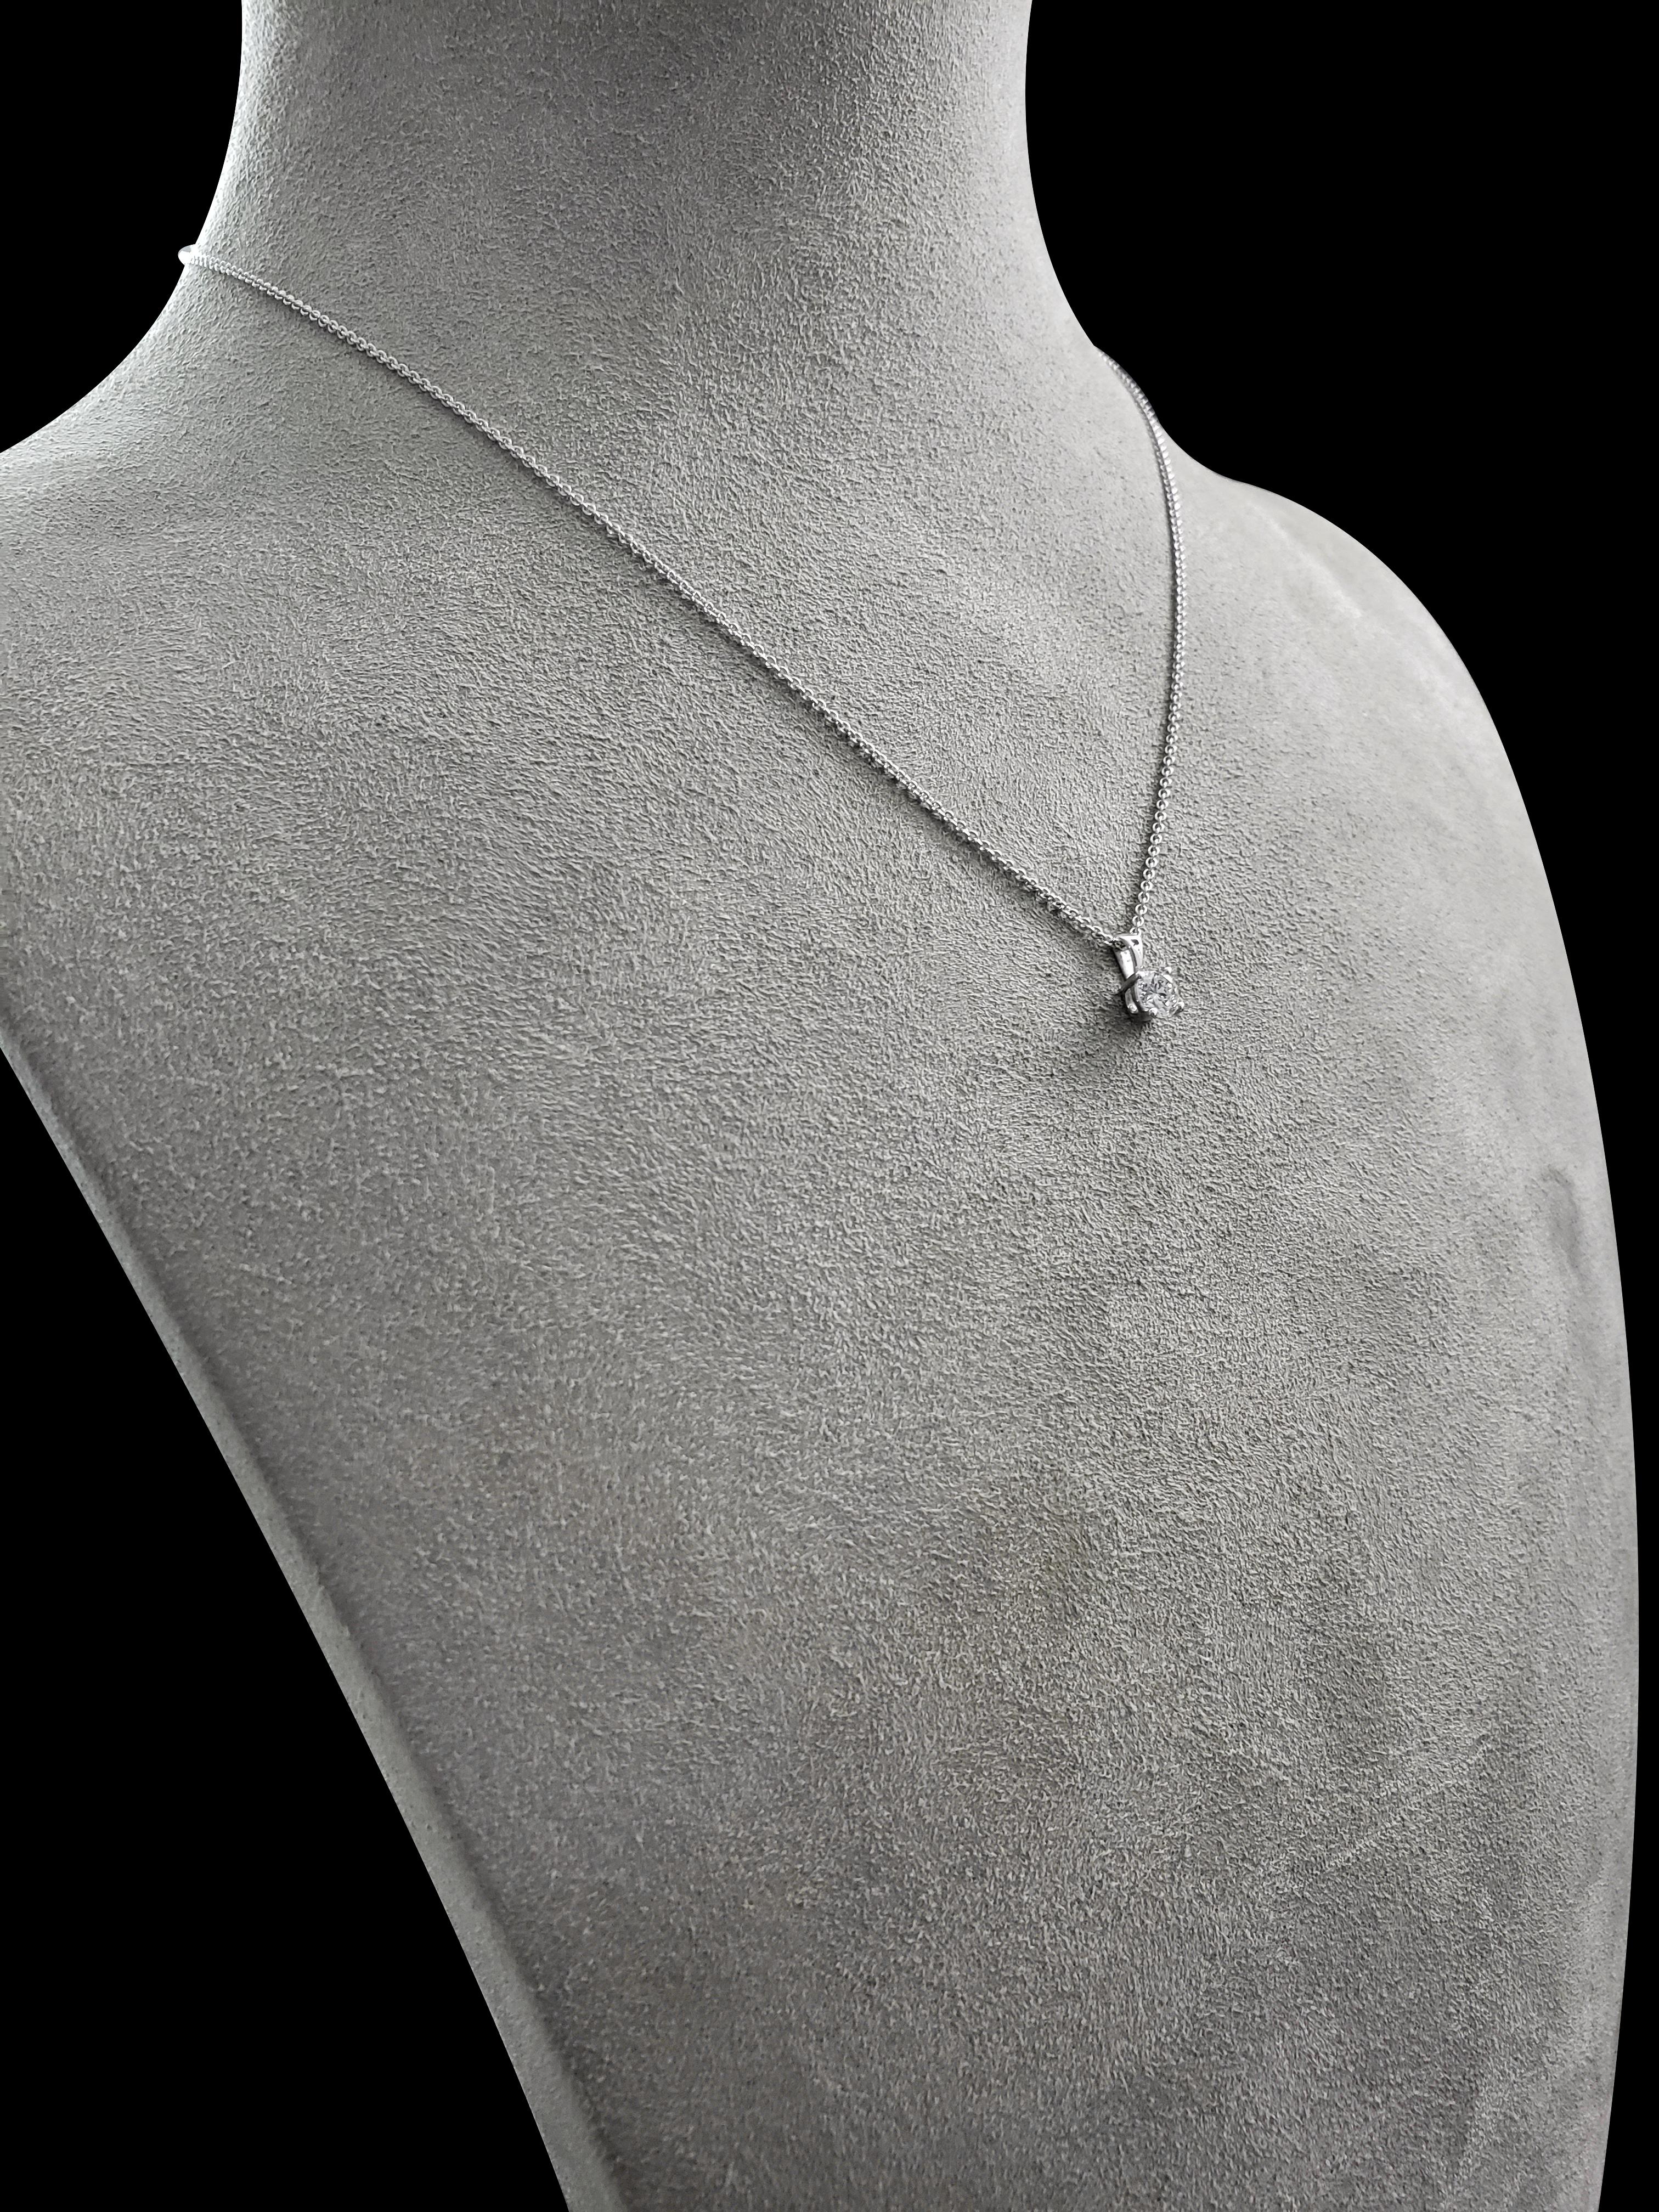 single diamond drop necklace